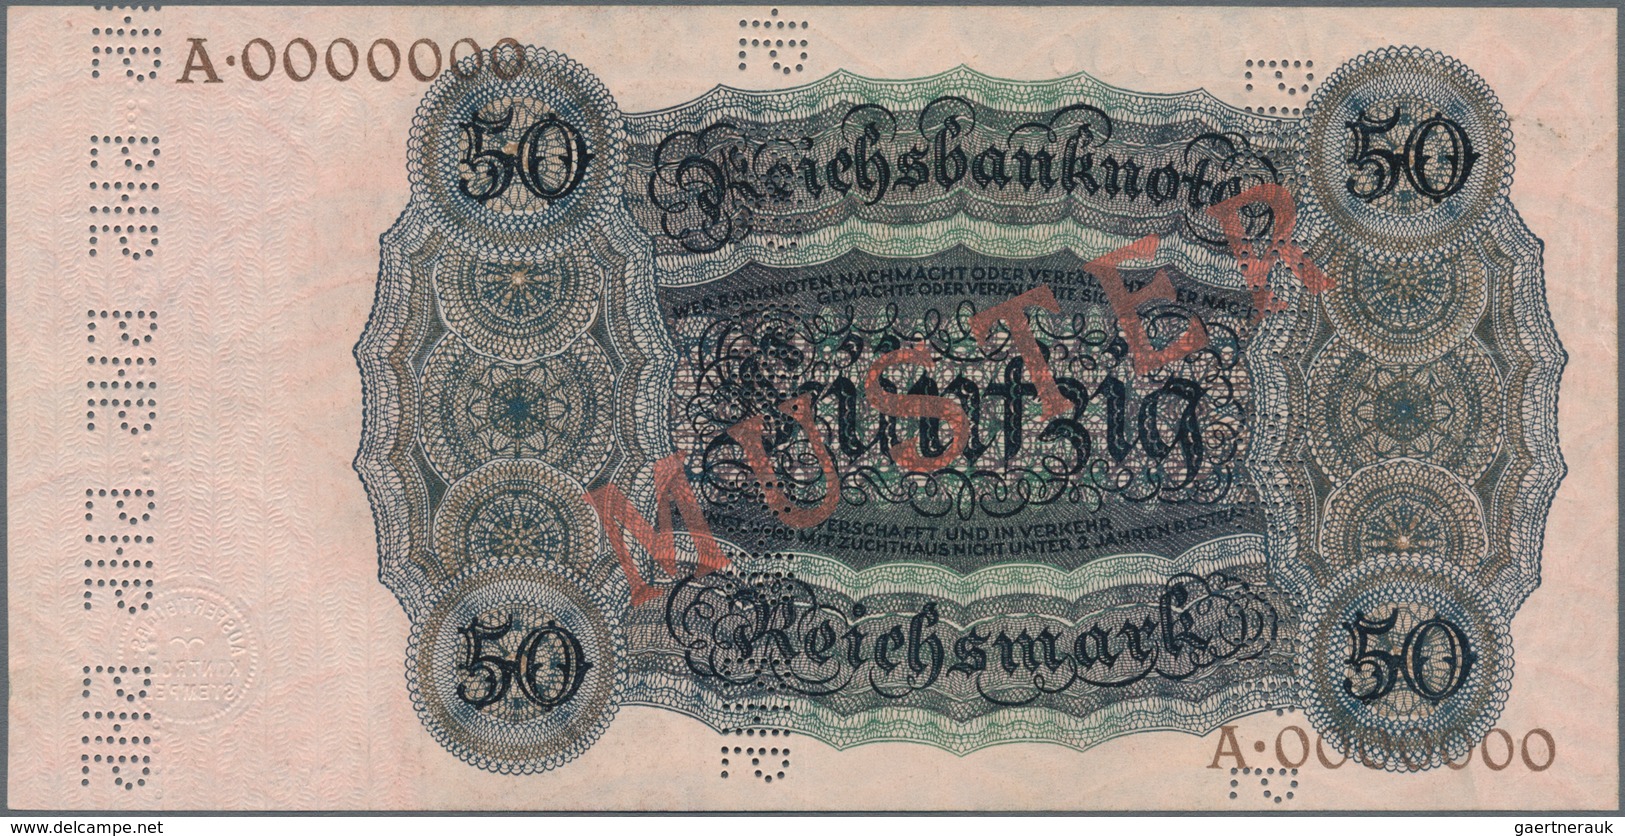 Deutschland - Deutsches Reich bis 1945: Mustersatz der Reichsbank - Holbein Serie 1924 von 10 bis 10